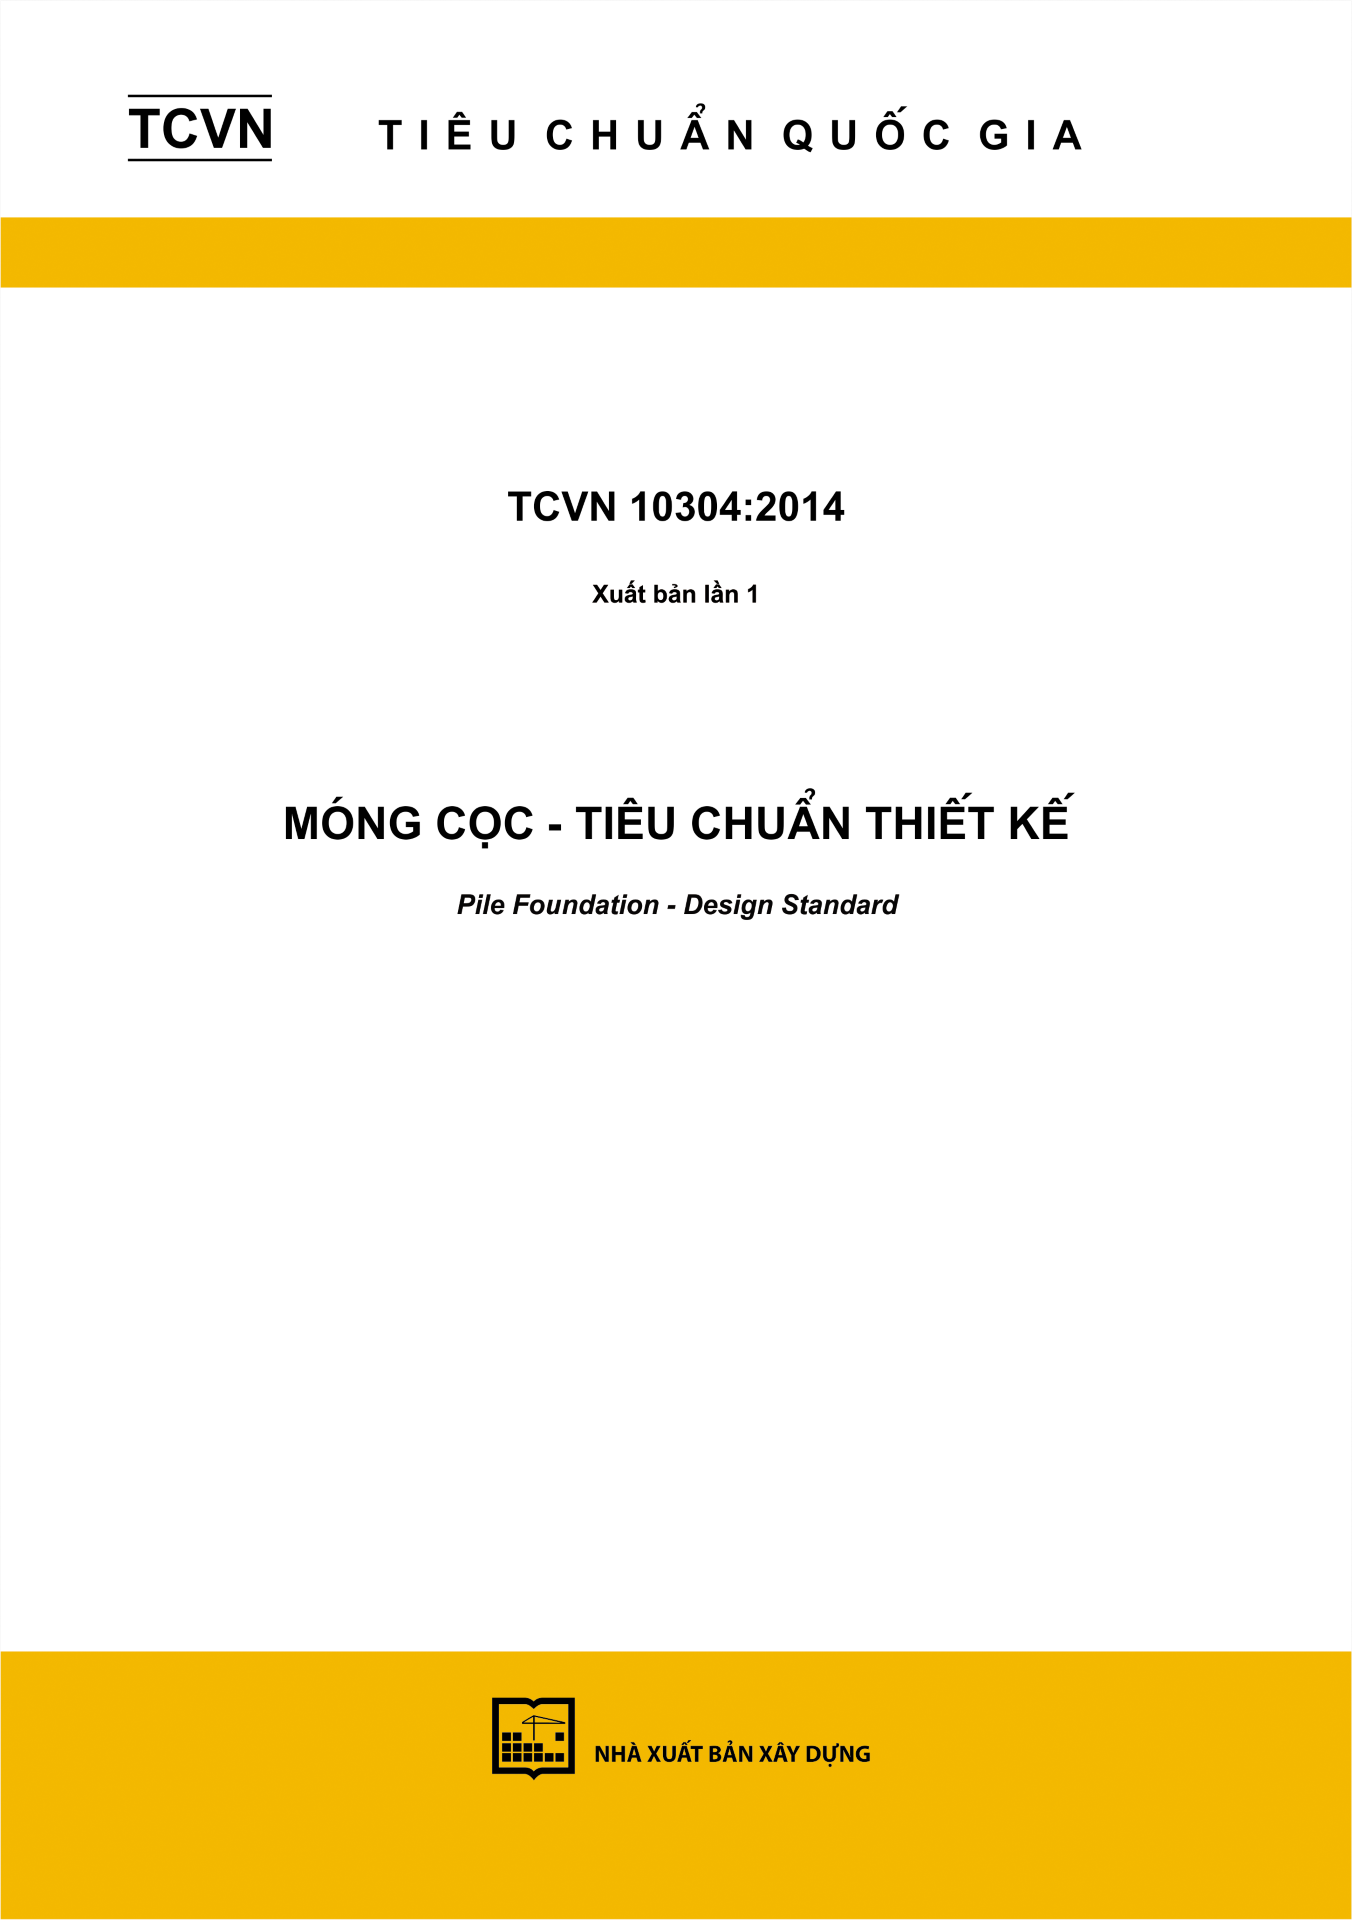 TCVN 10304:2014 móng cọc tiêu chuẩn thiết kế